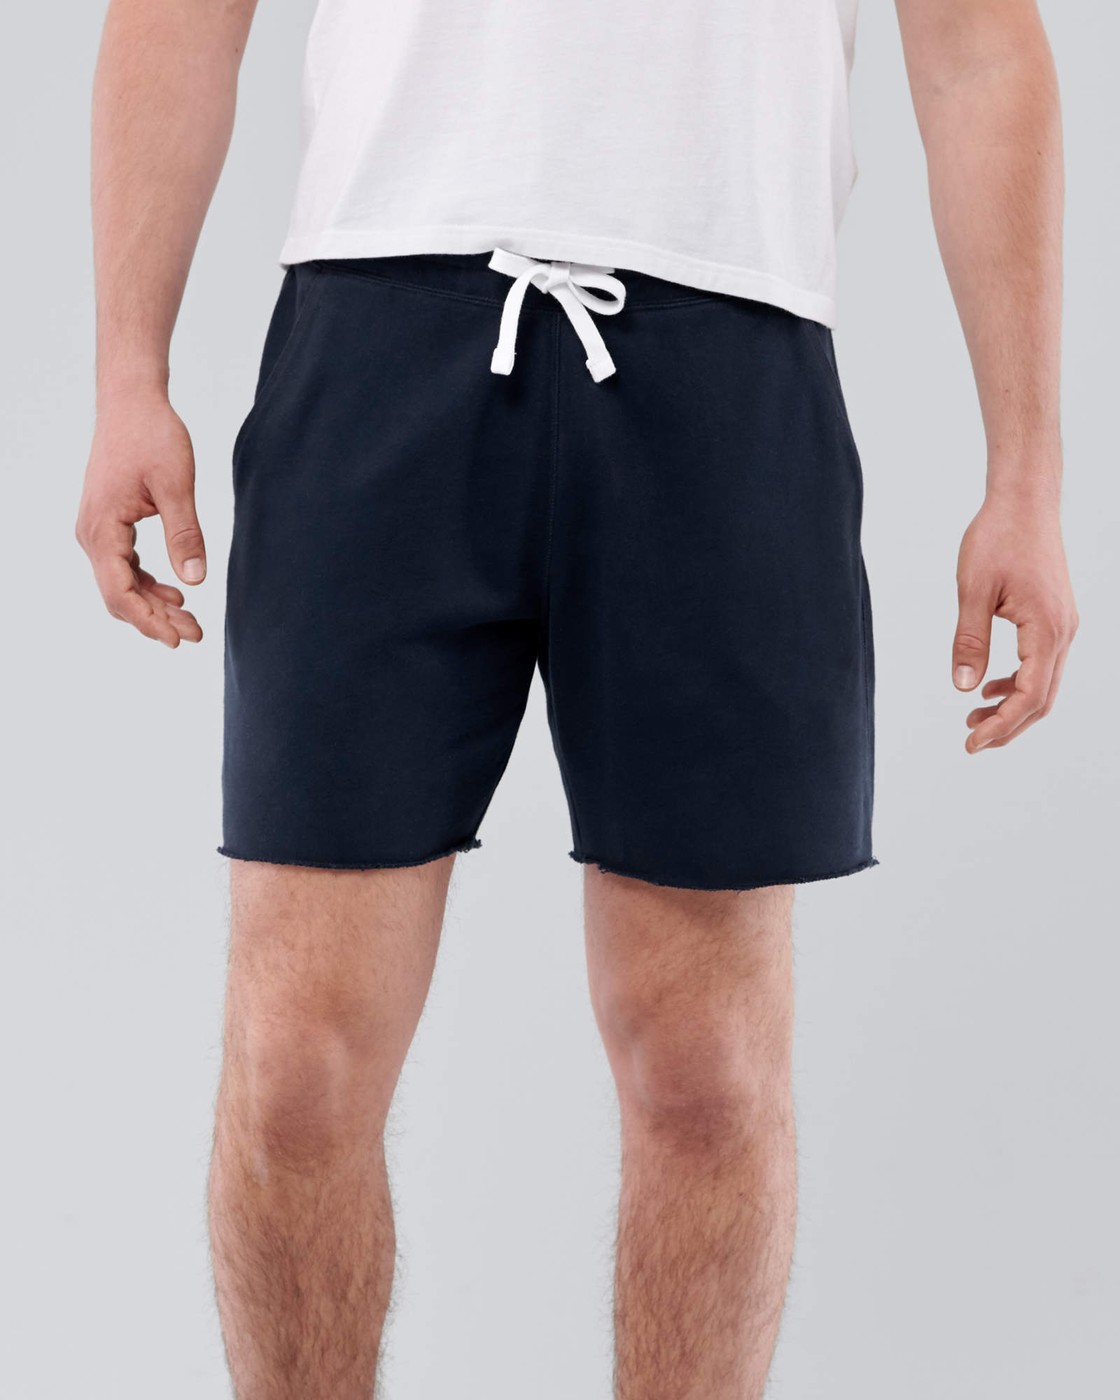 Спортивные шорты мужские - шорты для спорта Hollister, L, L